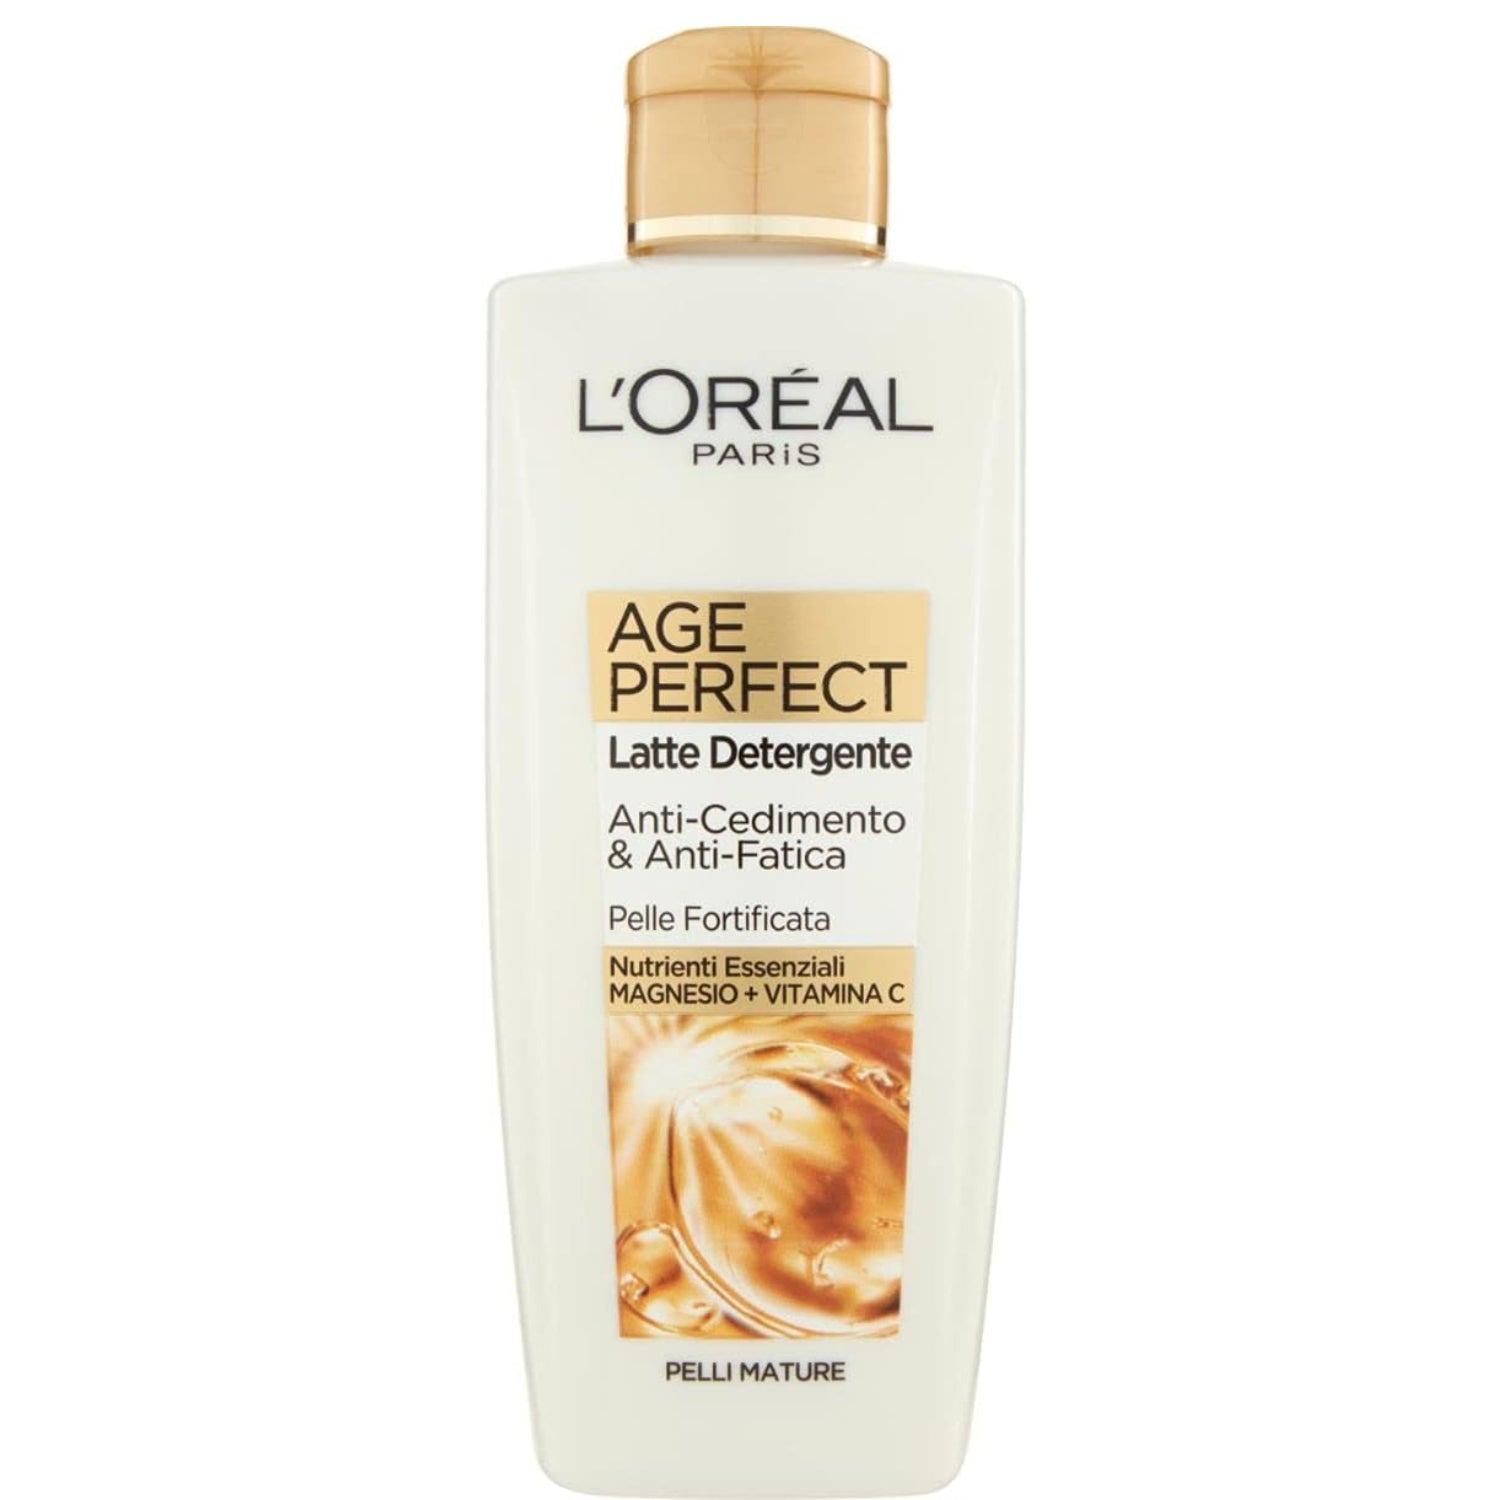 L'Oréal Paris Latte Age Perfect Golden Age Cleanser for Mature Skin 200 ml